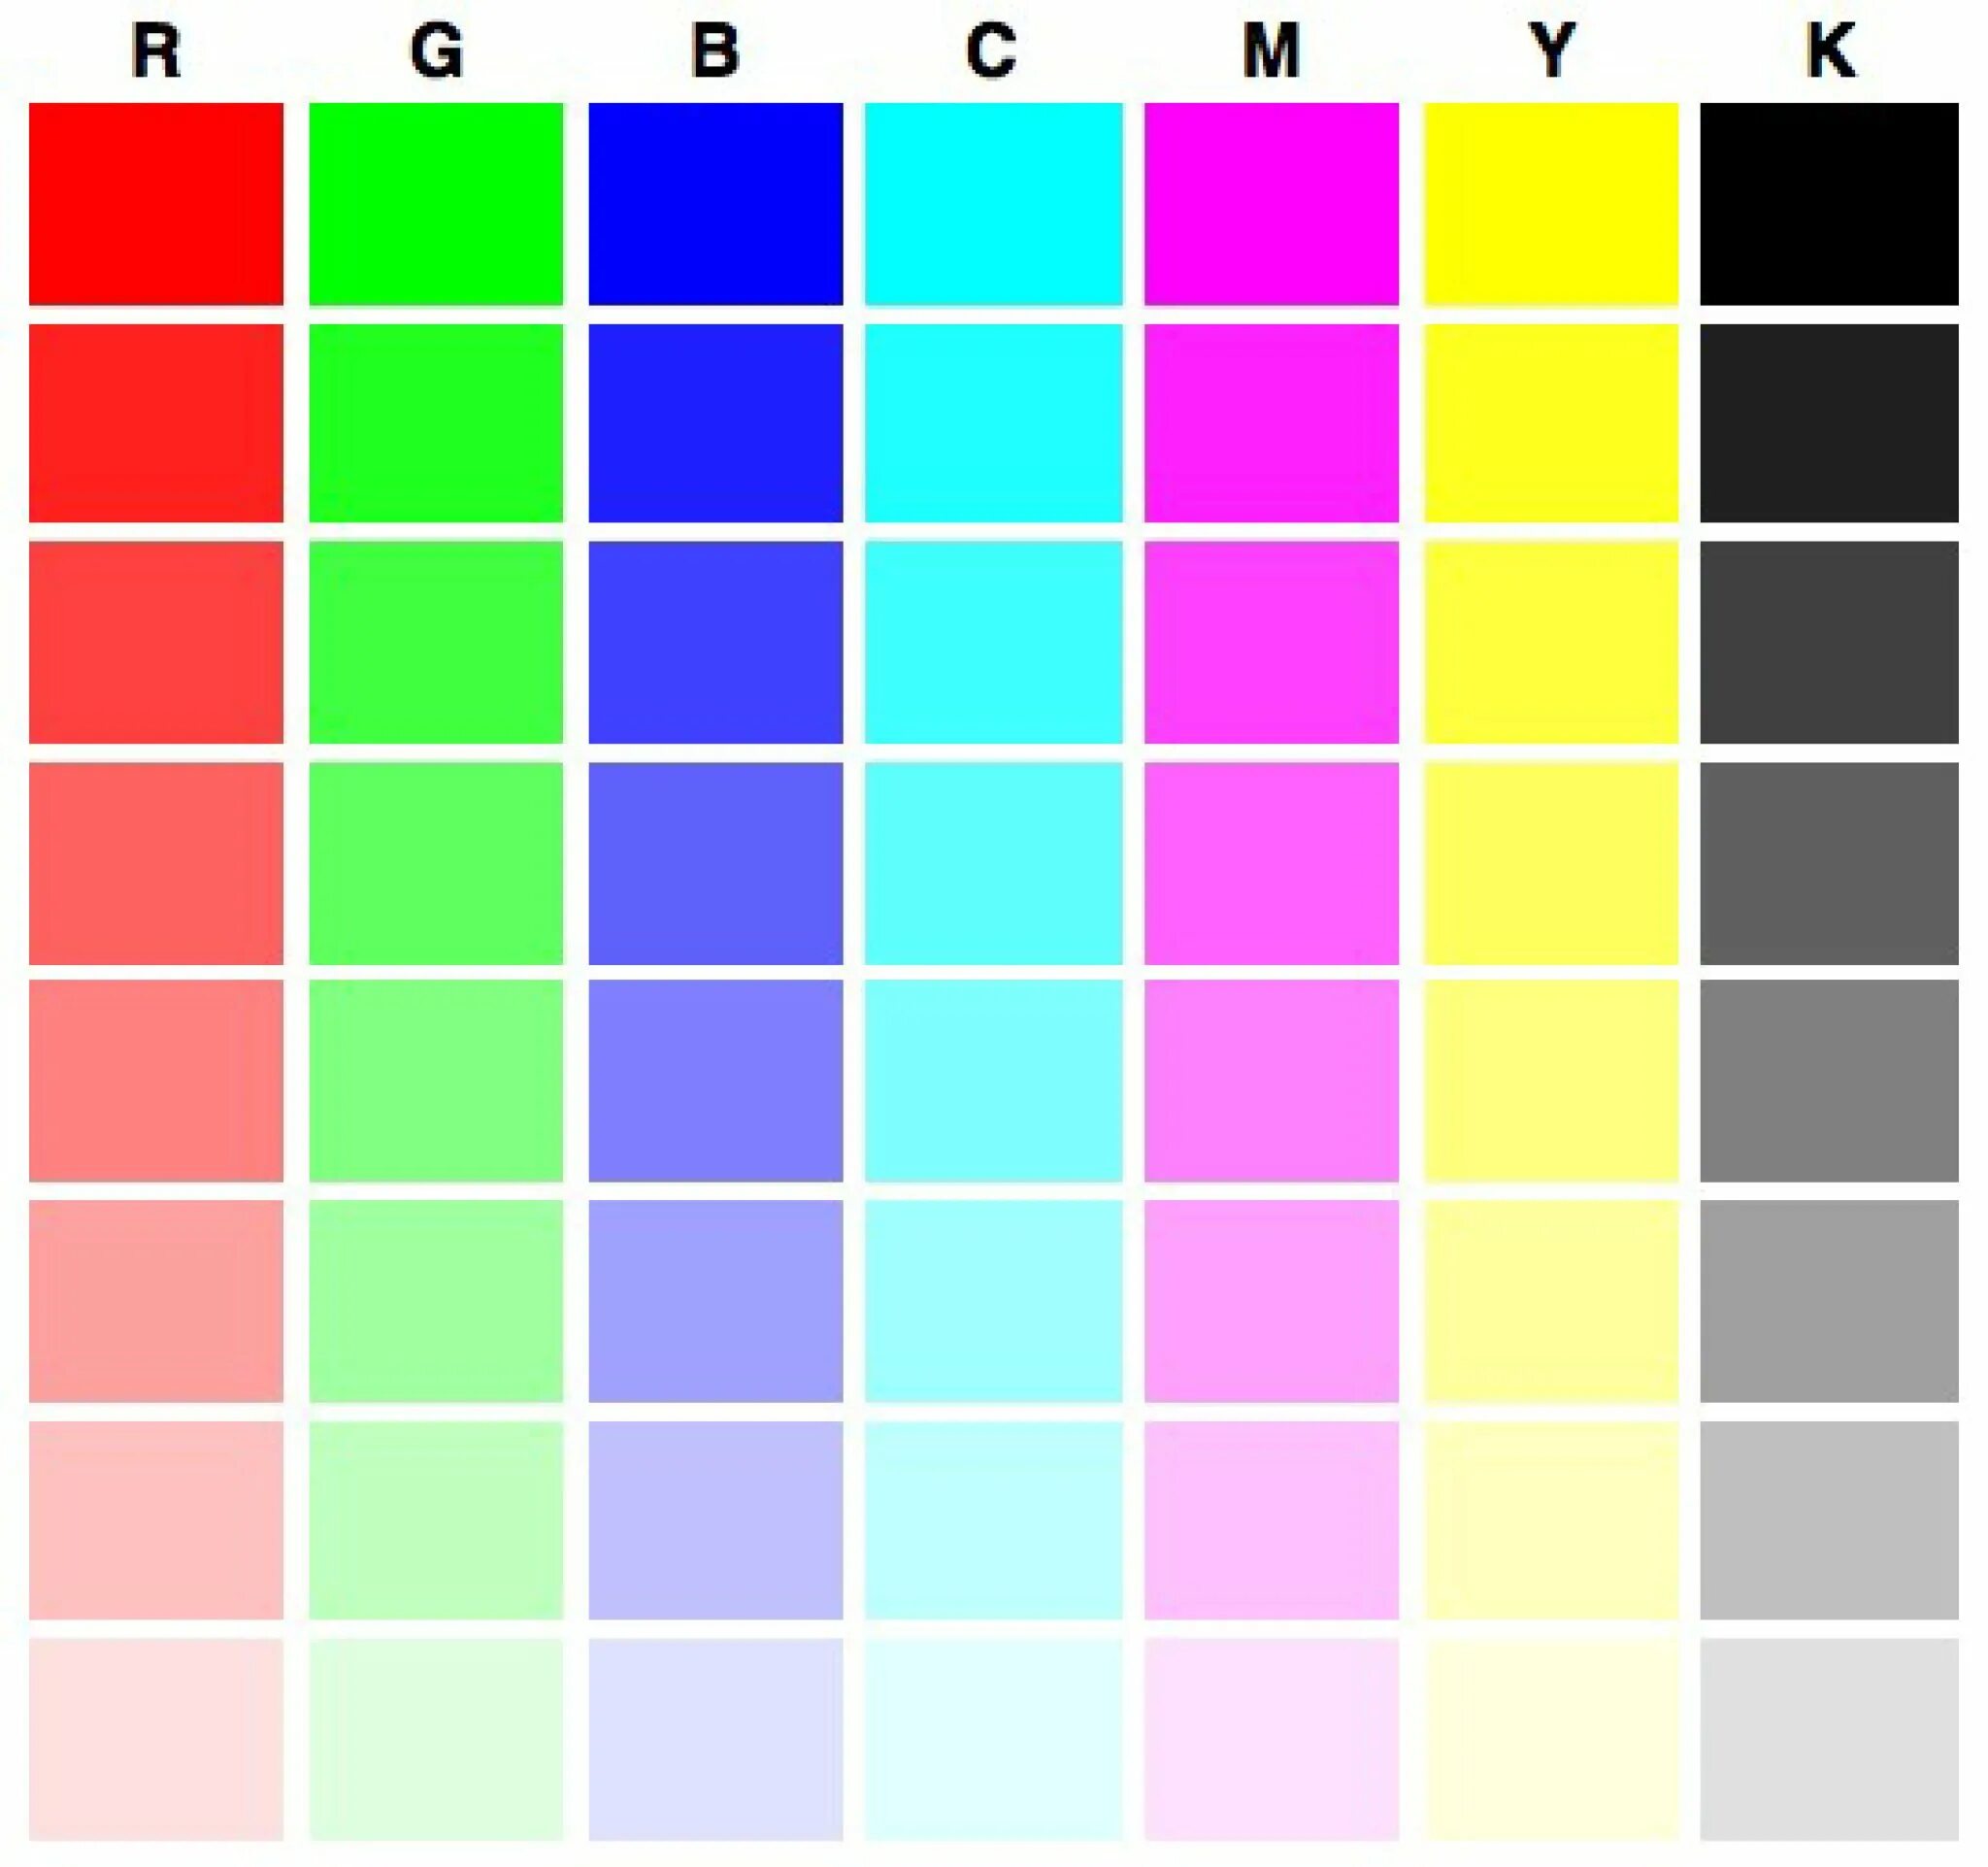 Тестовая страница для принтера Epson l800. Тест принтера Эпсон 6 цветов. Тест принтера Эпсон 4 цвета. Проверочная таблица цветов для принтера Эпсон. Печать цветных страниц